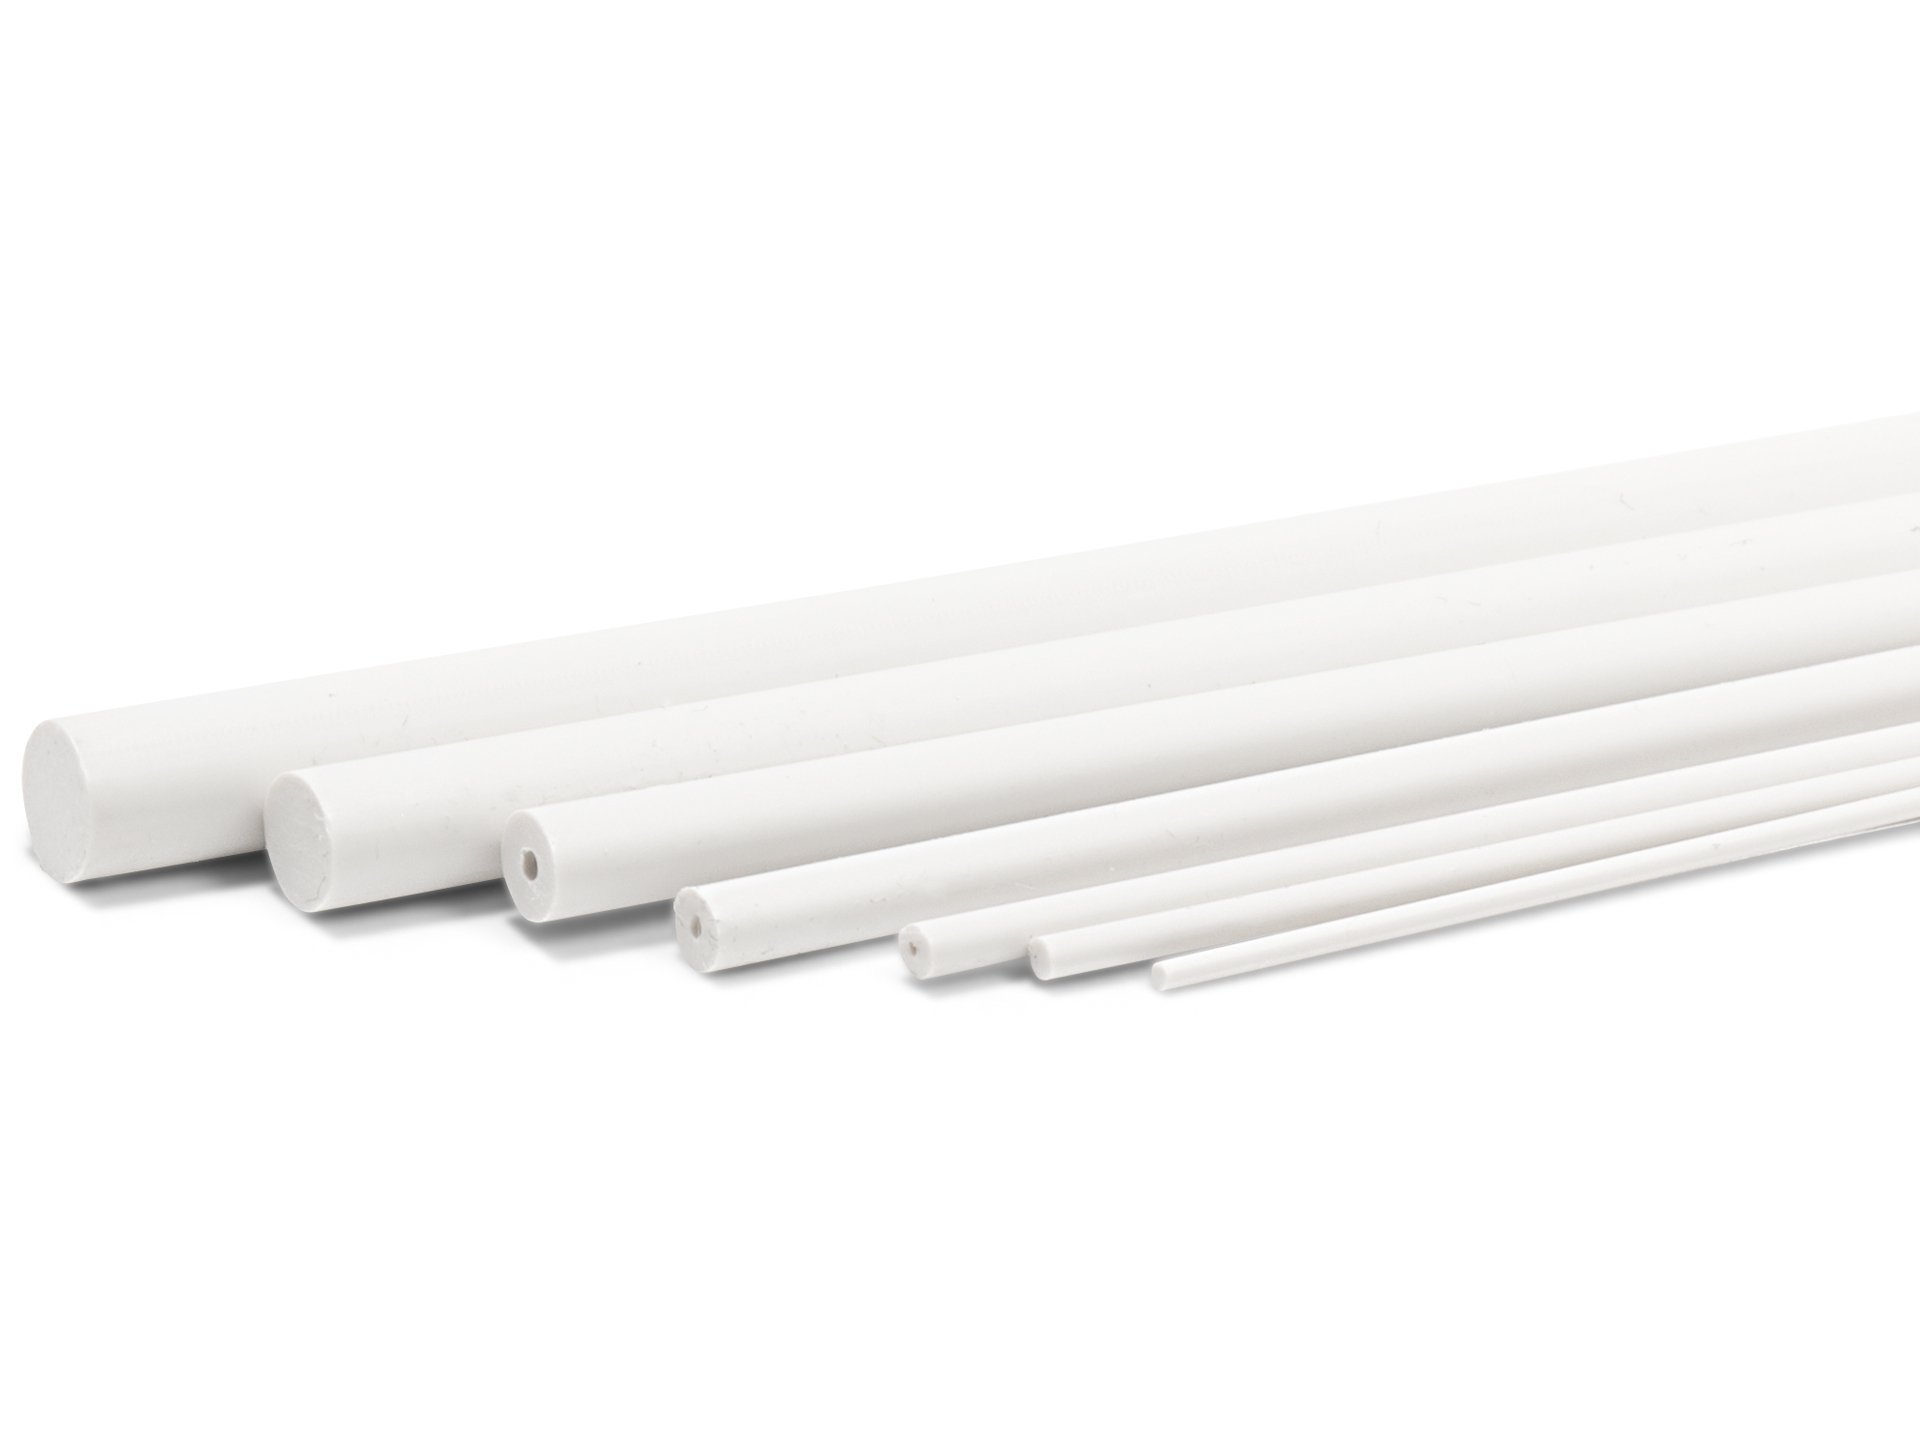 2 Stk Rund Stab Stange für Architekturmodellbau DIY ABS Kunststoff 6mm×20" Weiß 